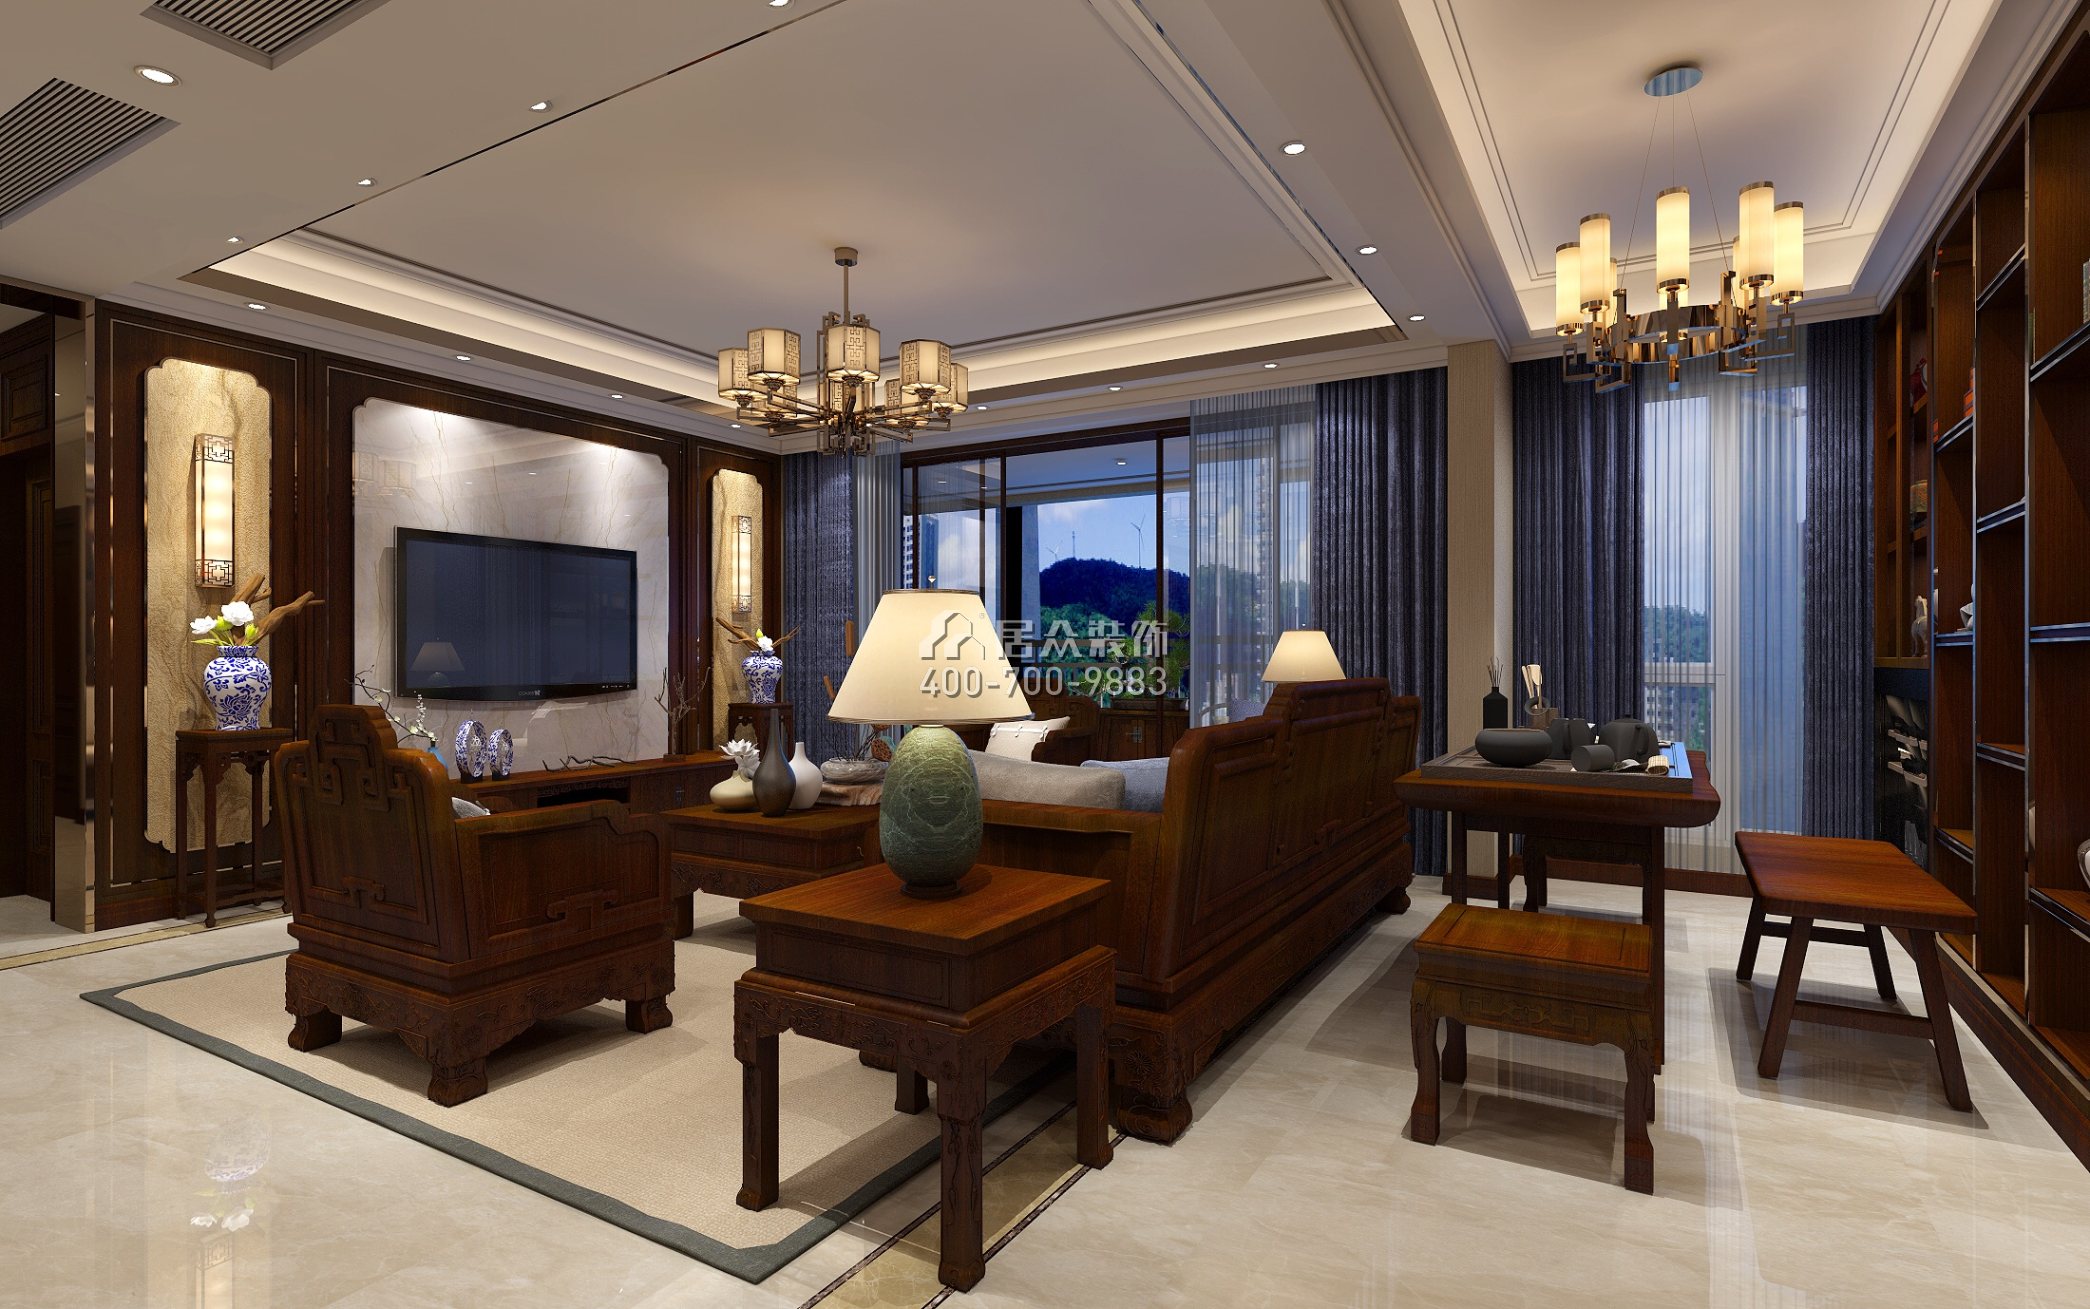 星河银湖谷180平方米中式风格平层户型客厅装修效果图